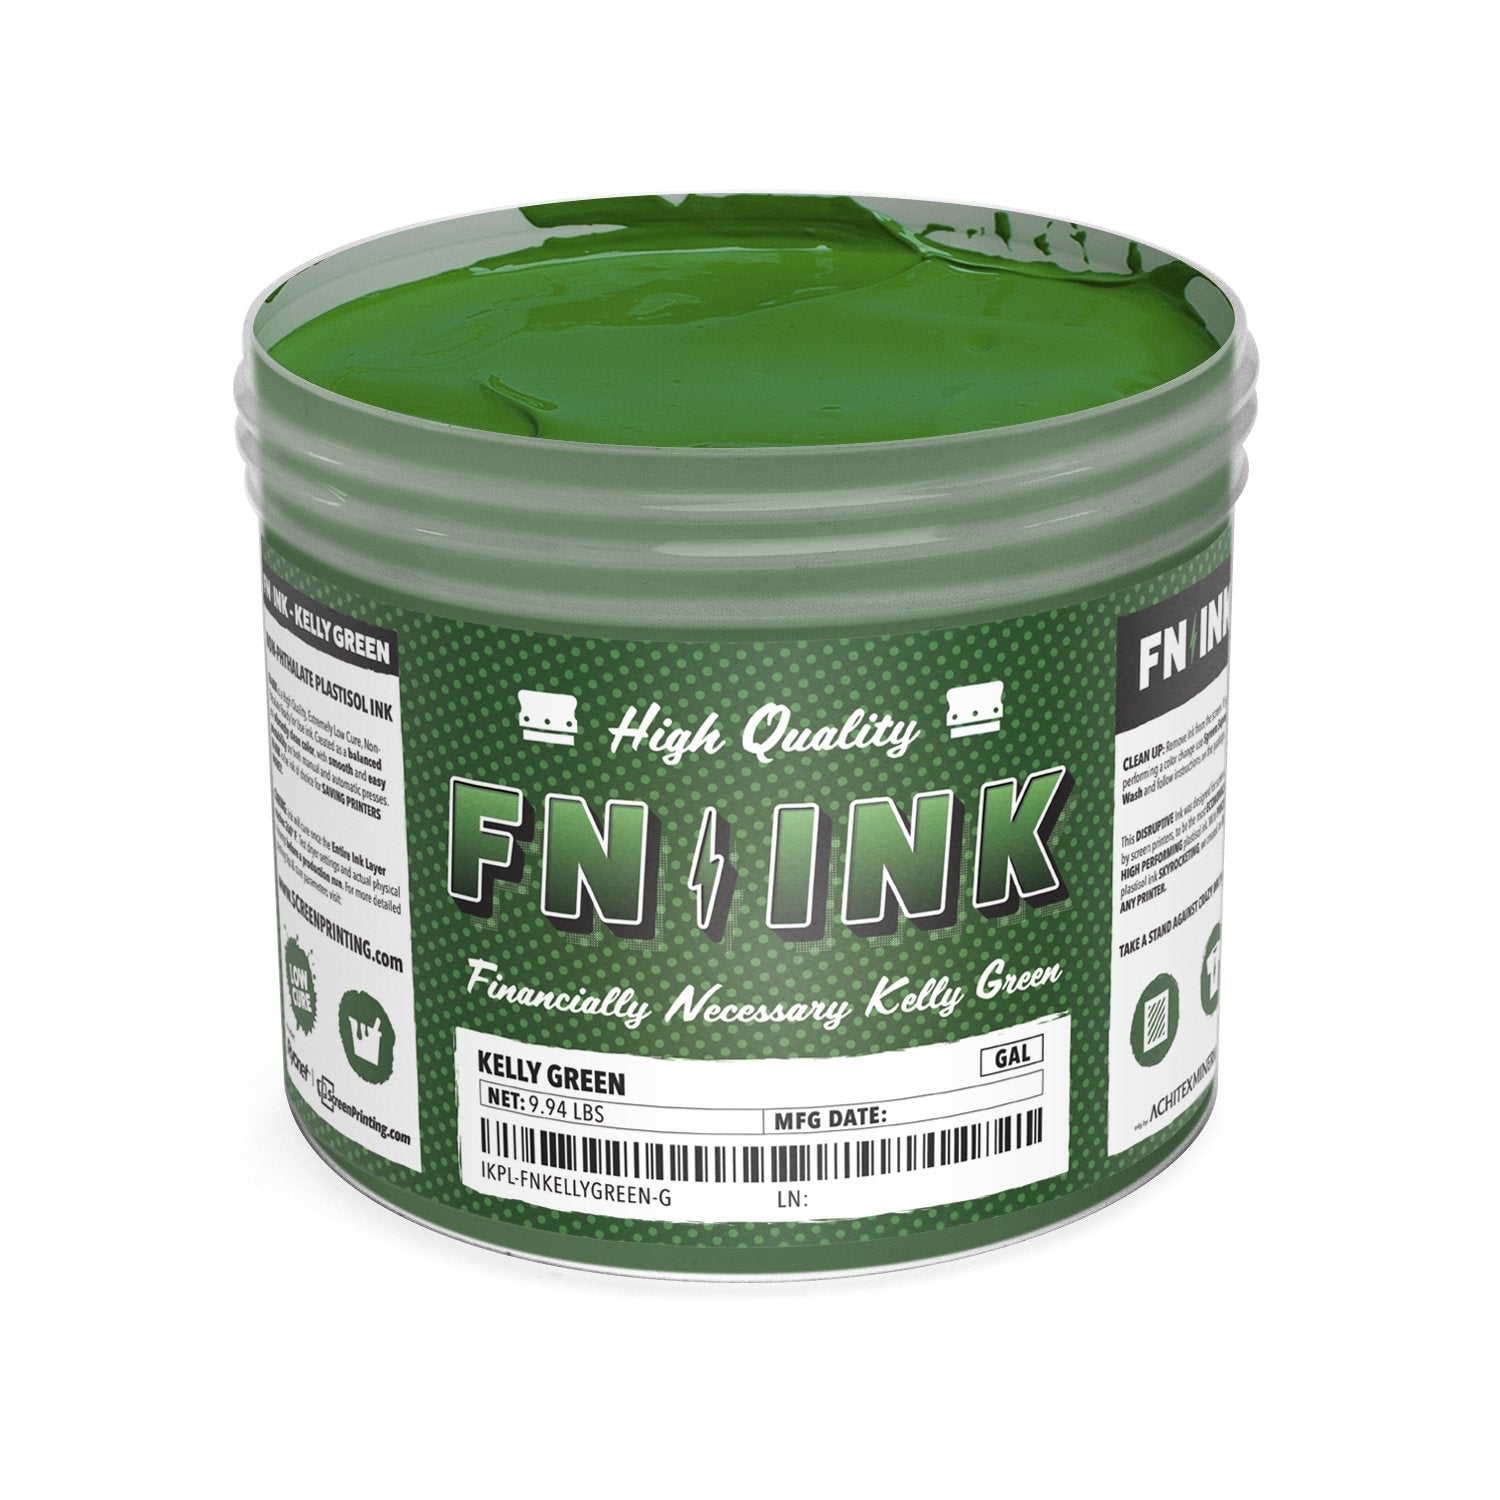 Leaf Green Plastisol Ink 1Kg by SK, ink for textile